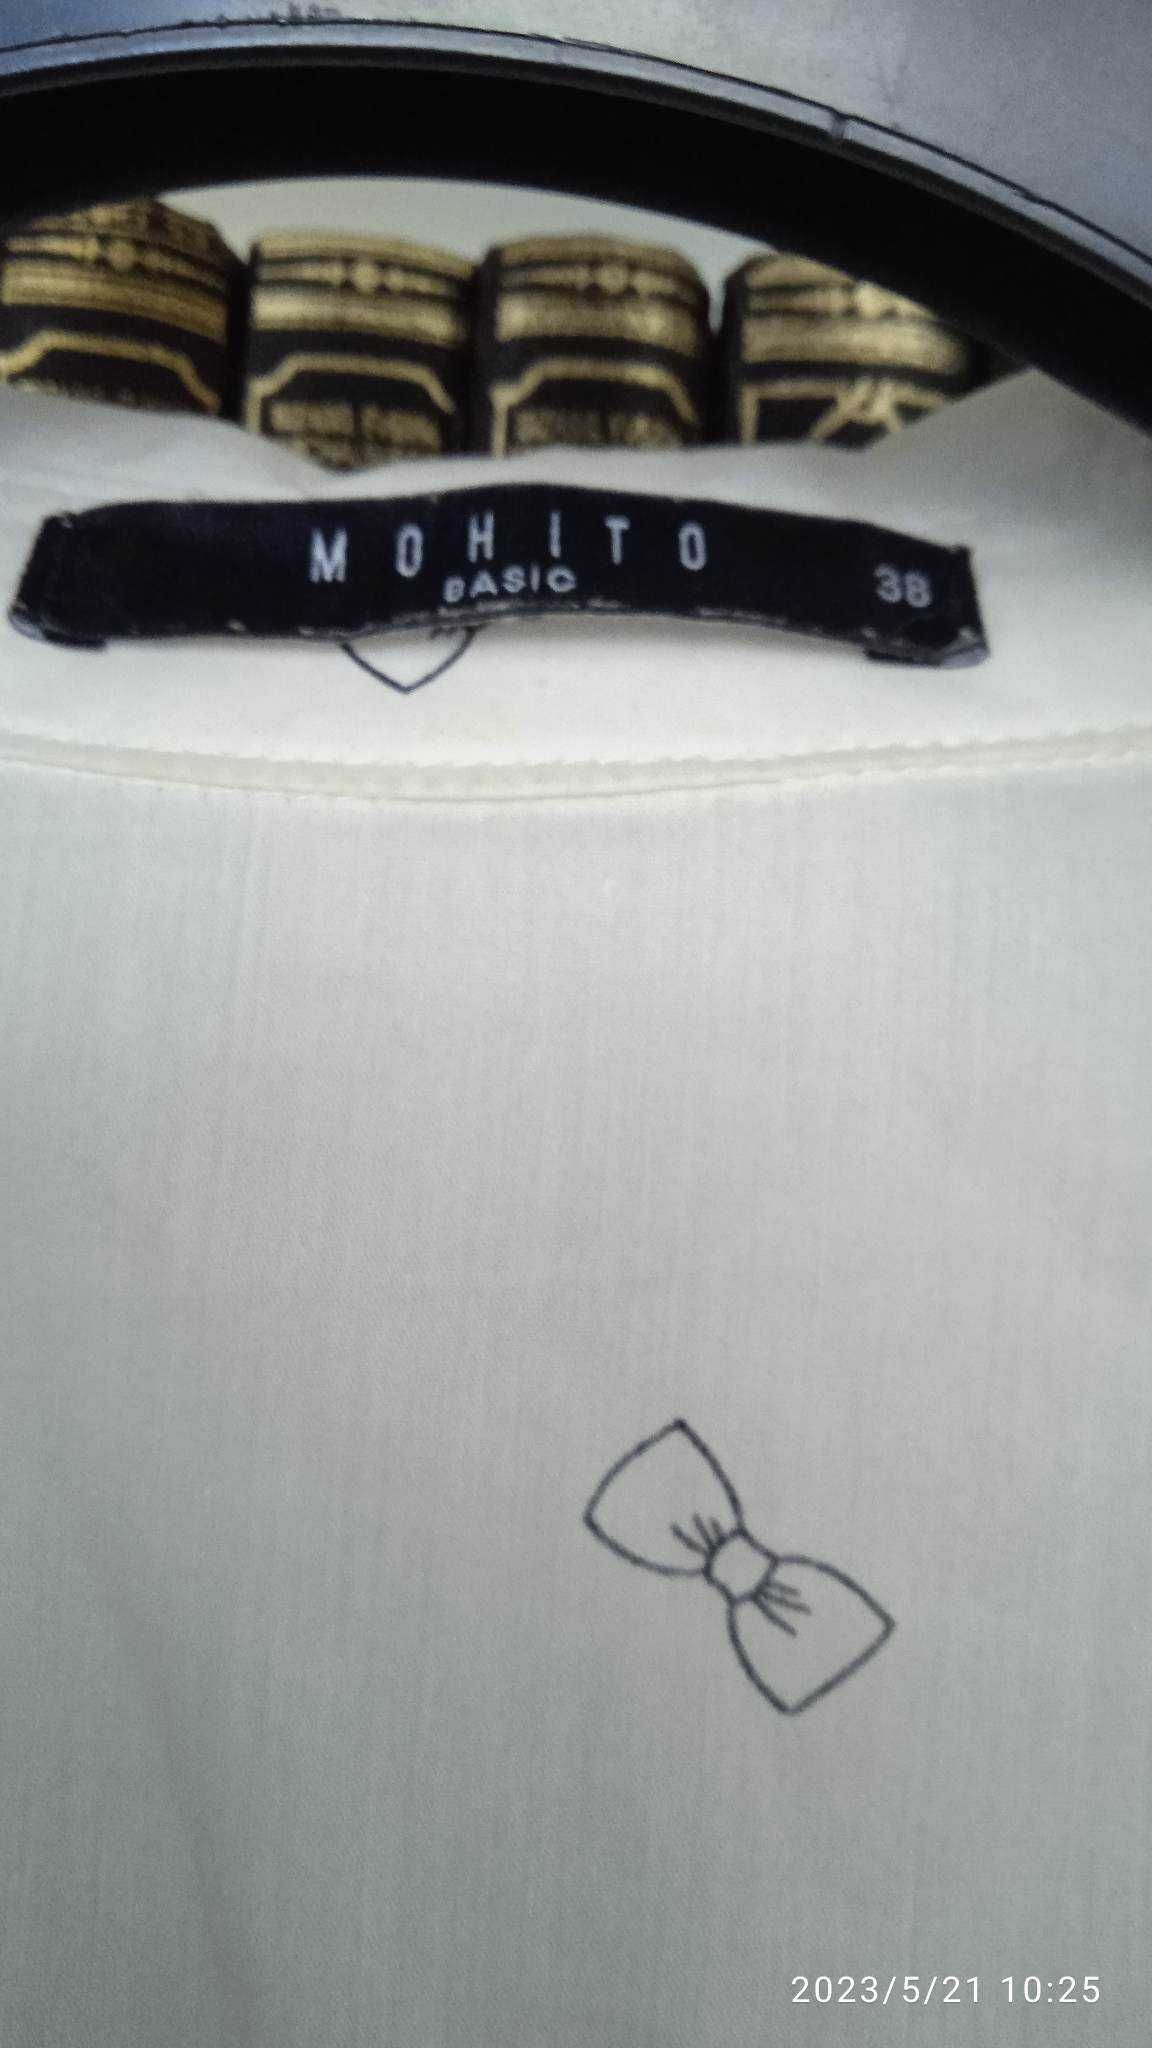 MOHITO jak nowa-świetna koszula bawełna -38/M